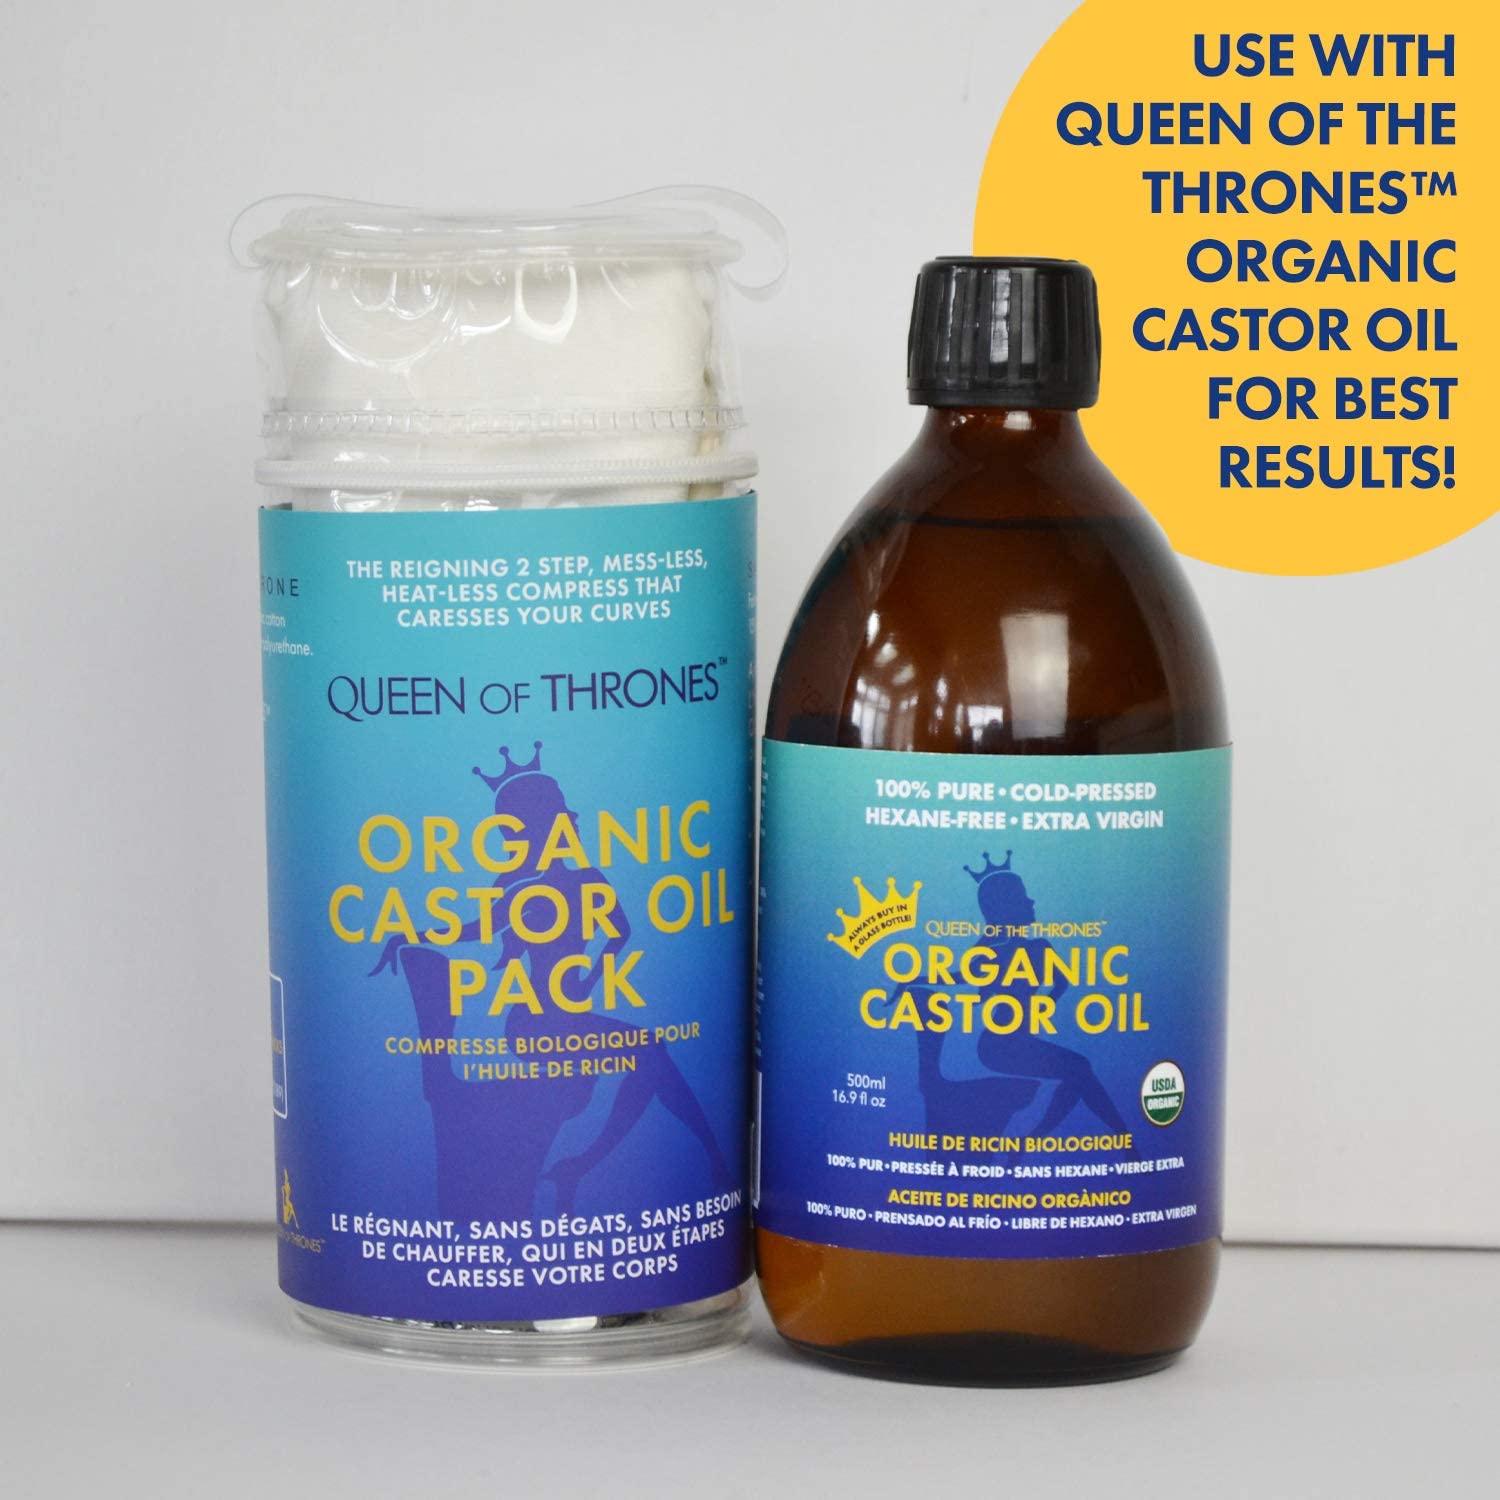 Castor Oil Pack